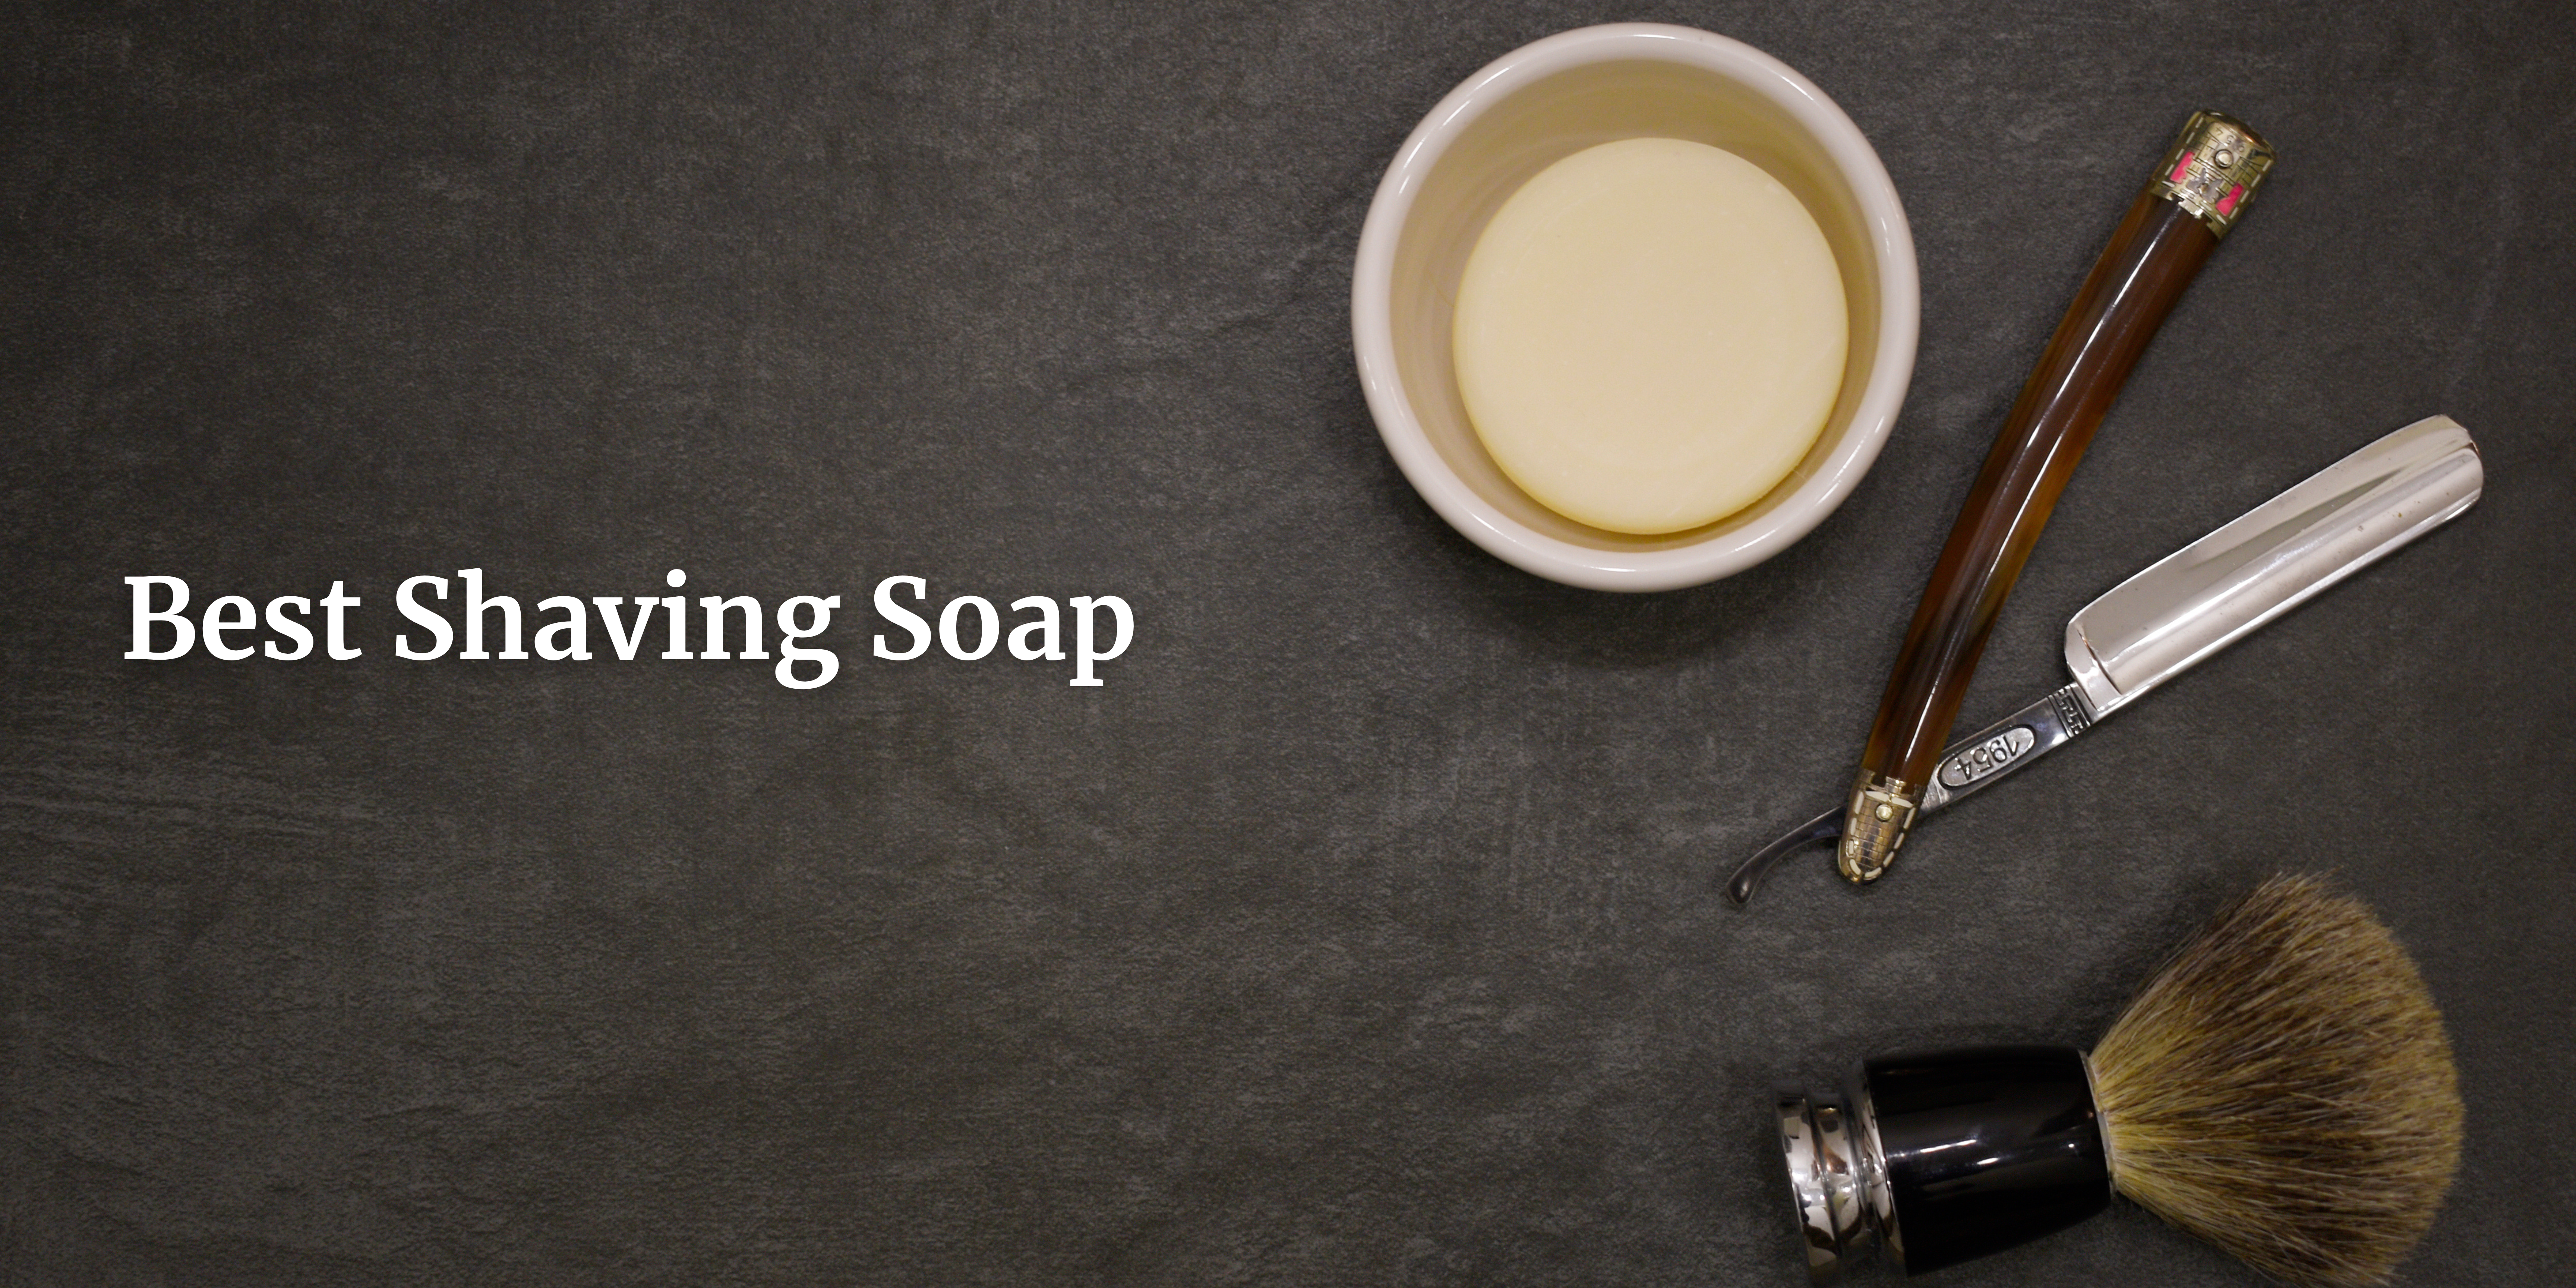 shaving soap in Sweden